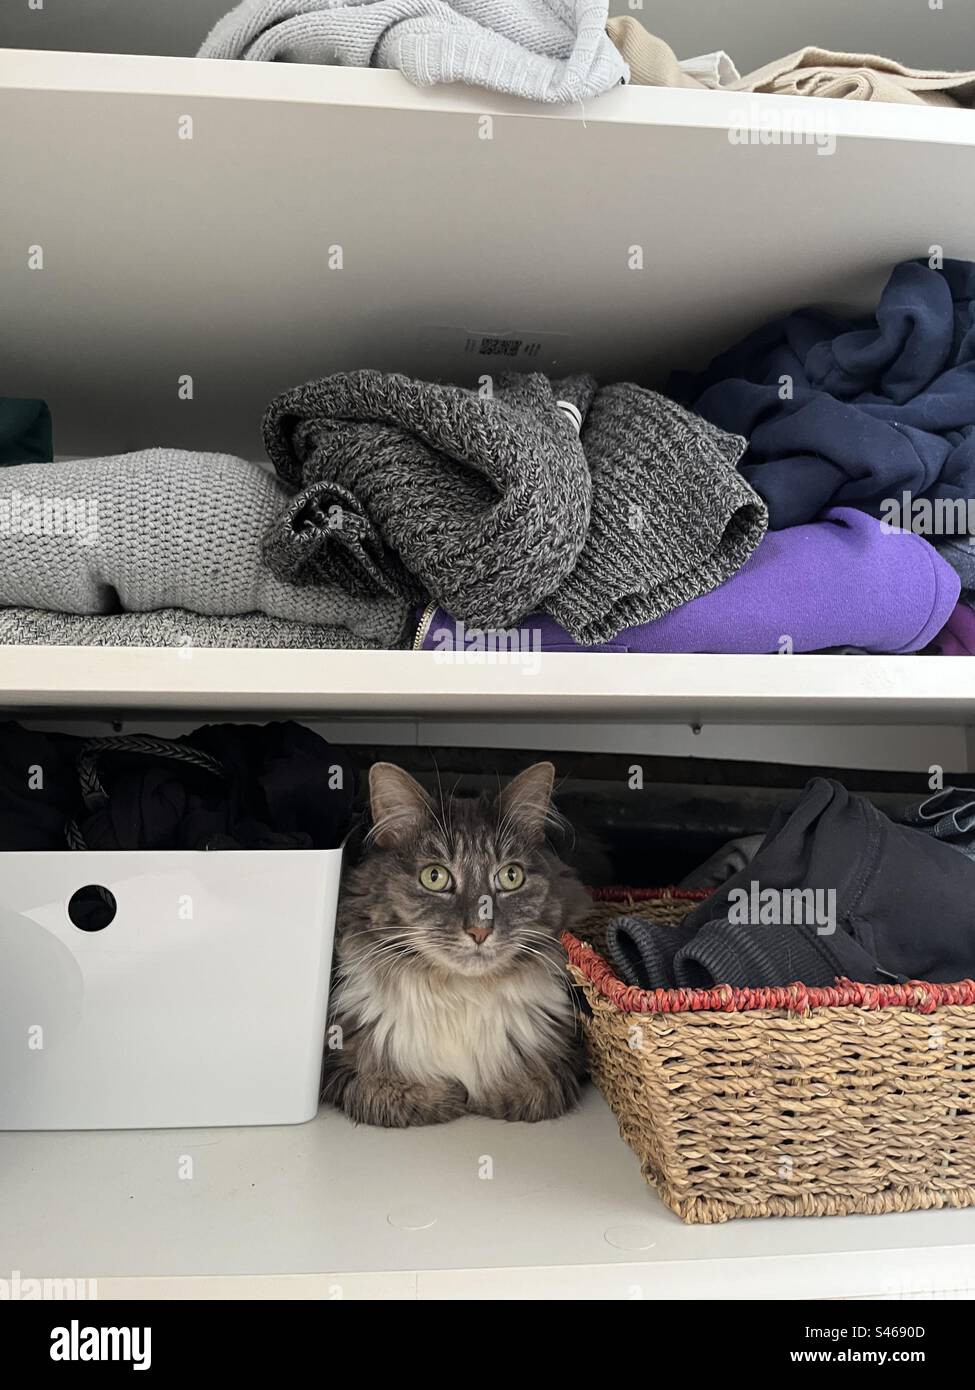 Gatto siberiano grigio e bianco sedeva braccia piegate con grandi orecchie all'interno di un armadio armadio pieno di vestiti, salti e scatole Foto Stock